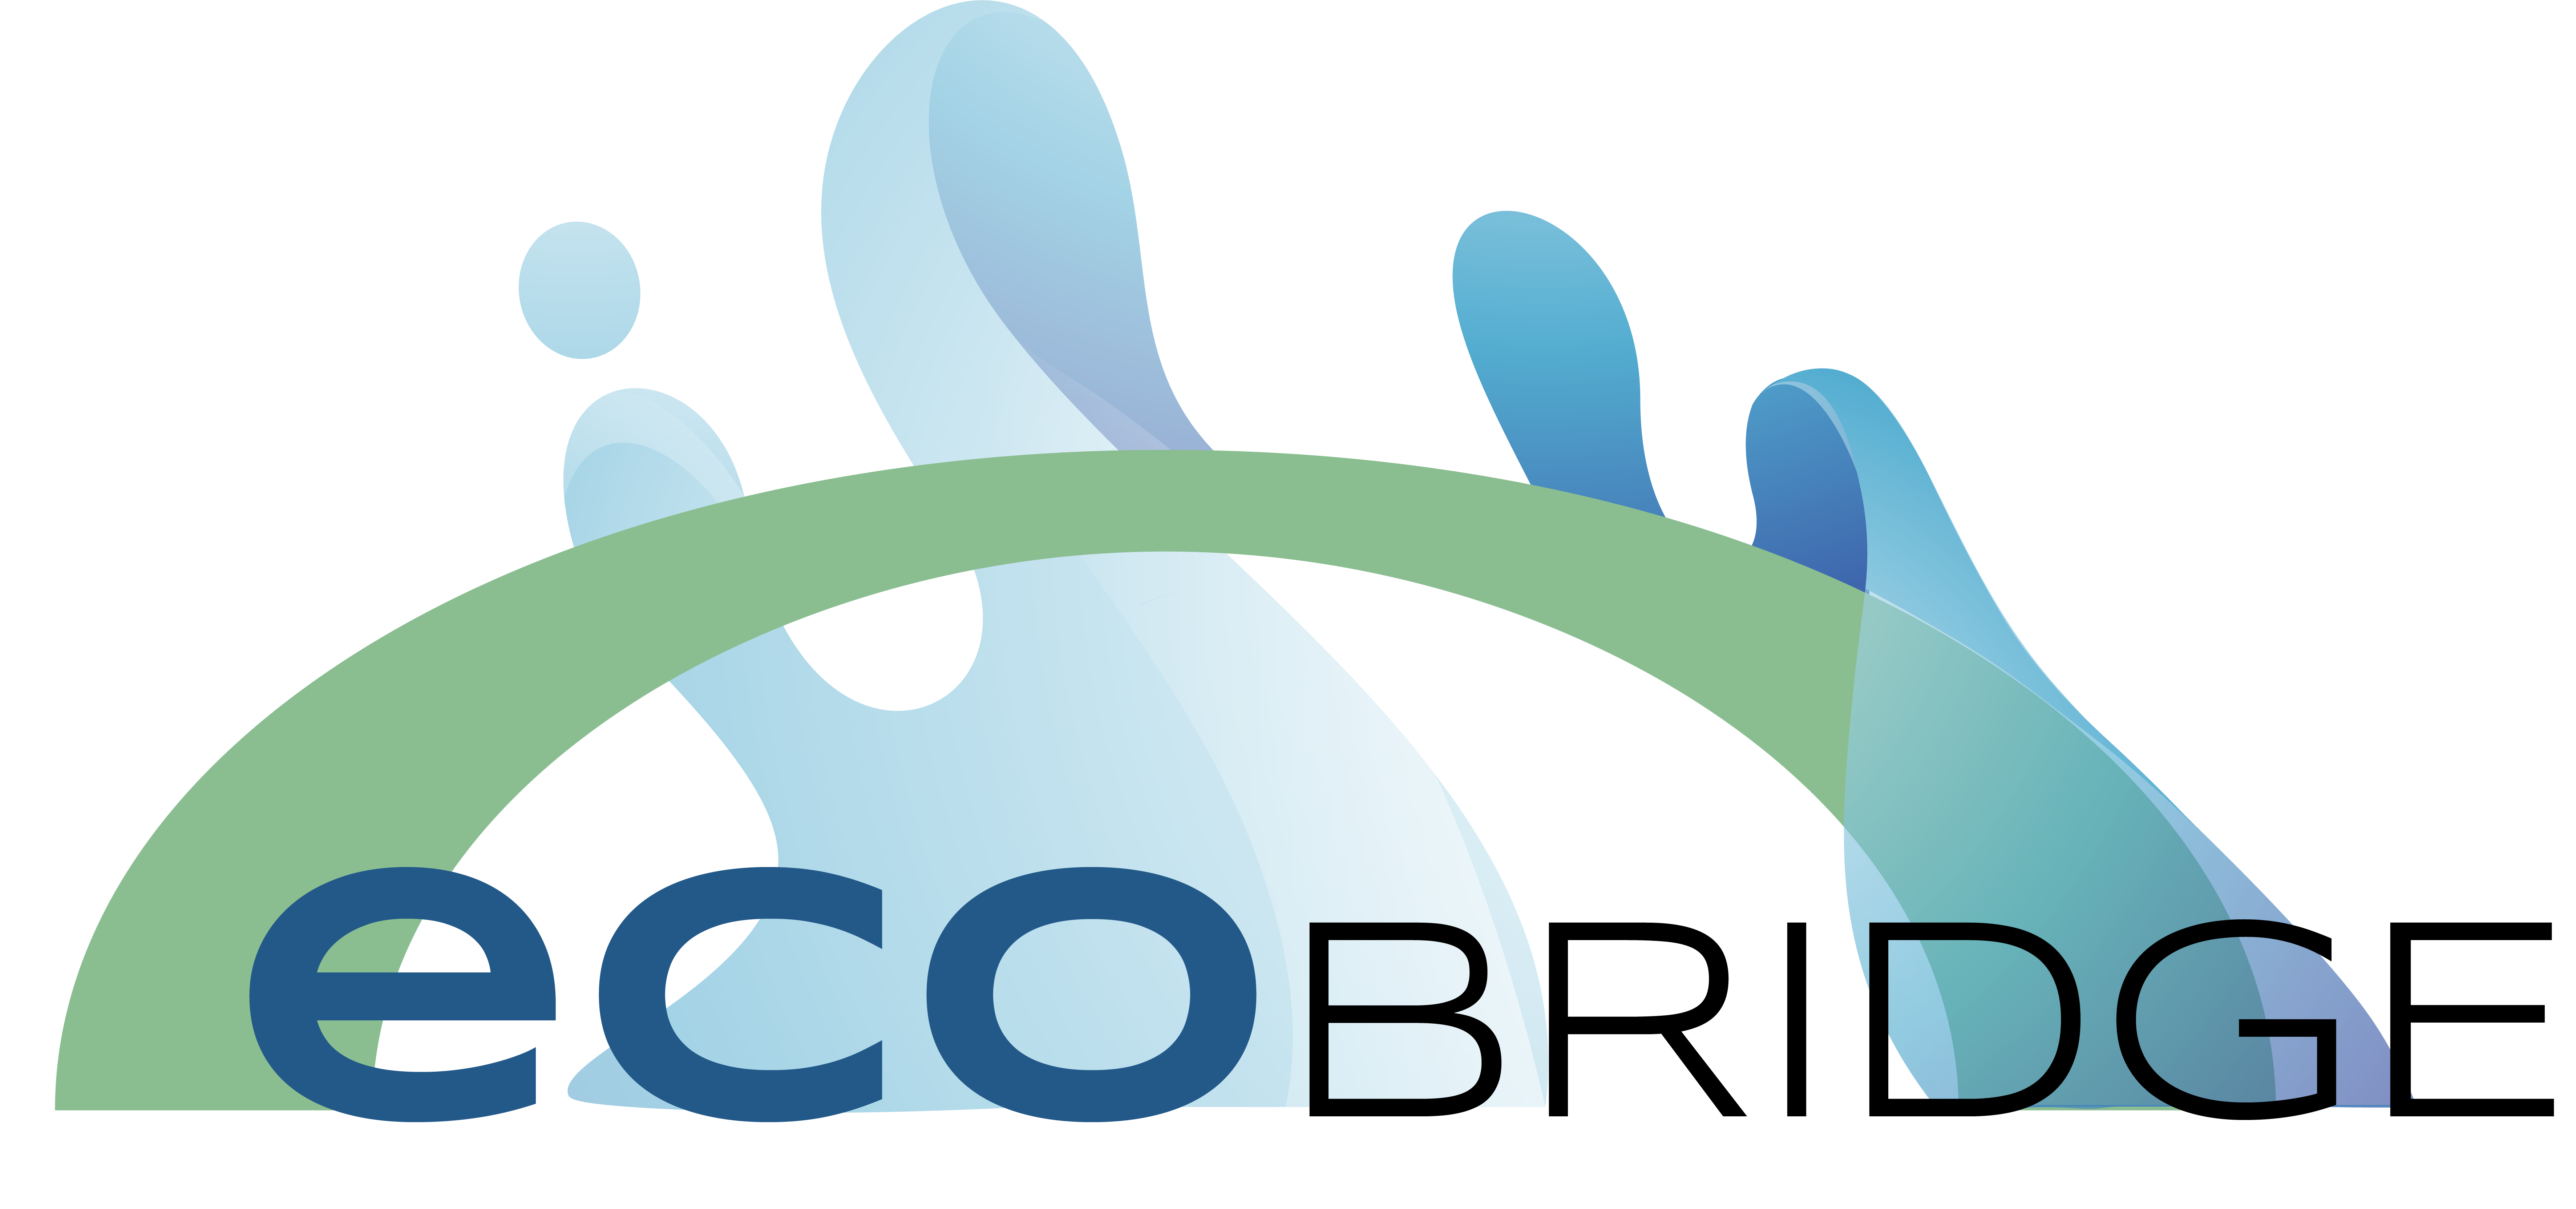 Η Ecobridge αναζητά χειριστές μηχανημάτων καθαρισμού στην Κω για πλήρη ή μερική απασχόληση